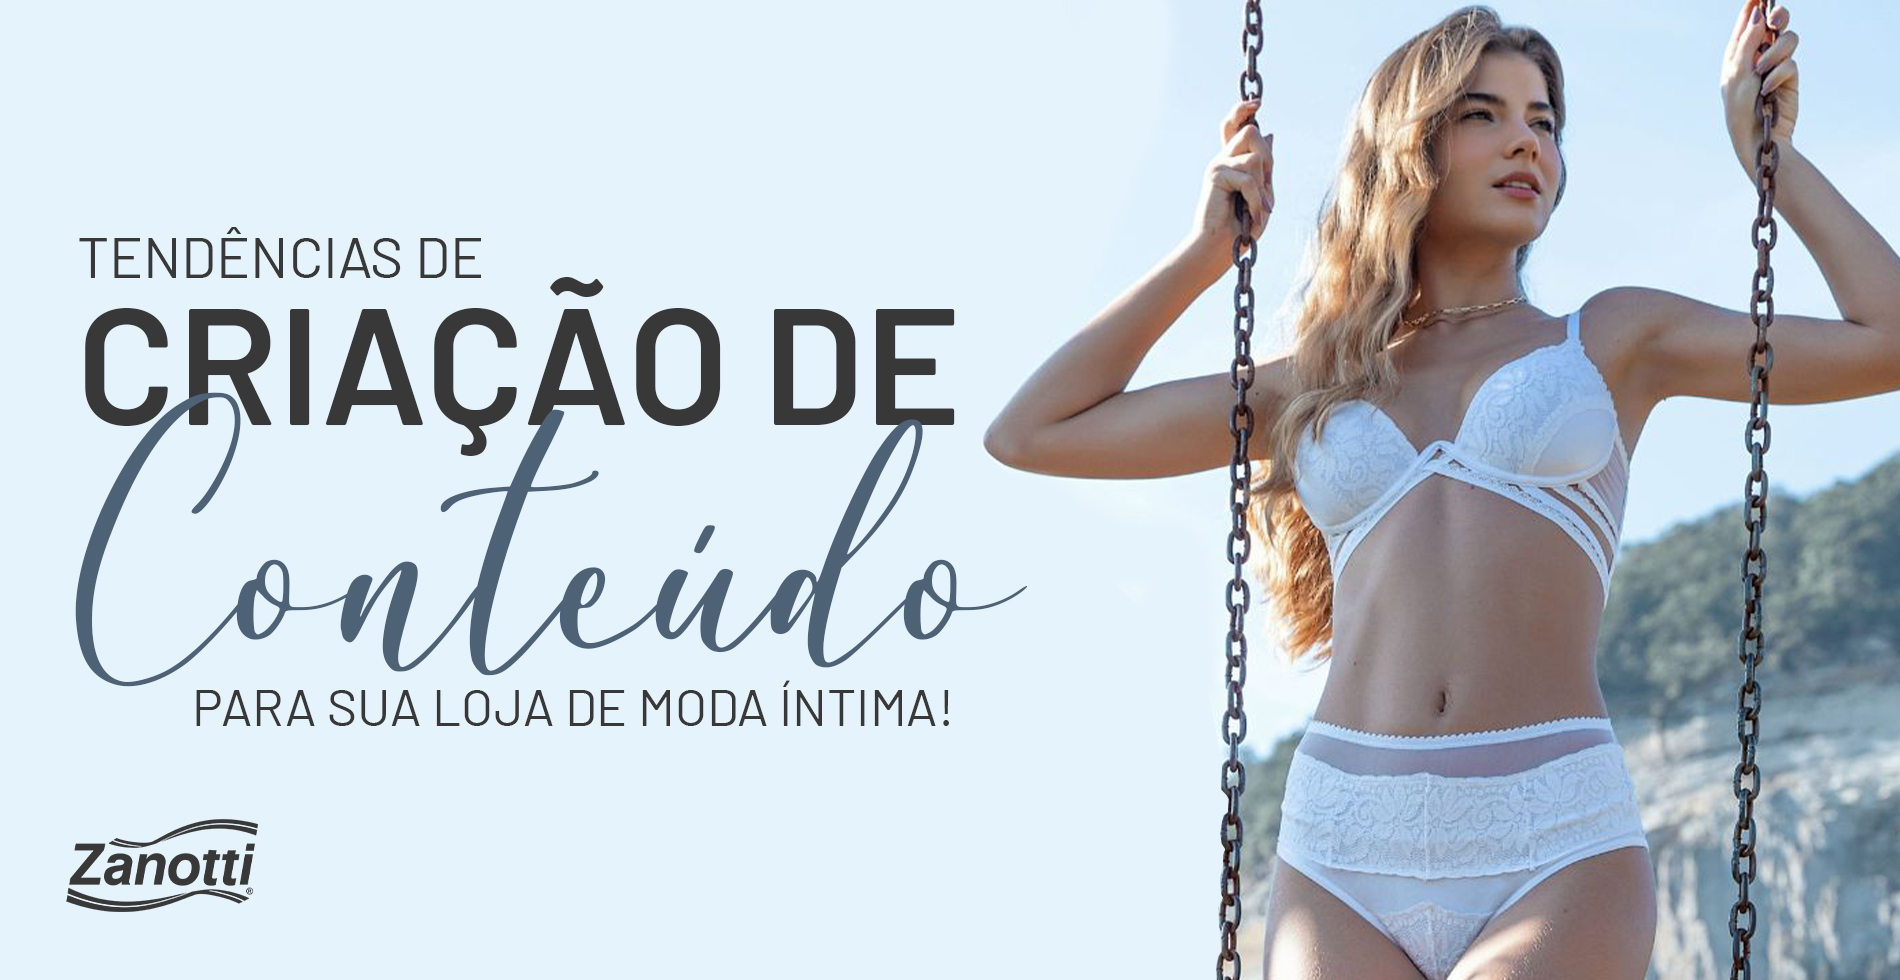 https://zanotti.com.br/blog/wp-content/uploads/2023/09/Banners_-_Tendencias_de_criacao_de_conteudo_para_sua_loja_de_moda_intima.jpg